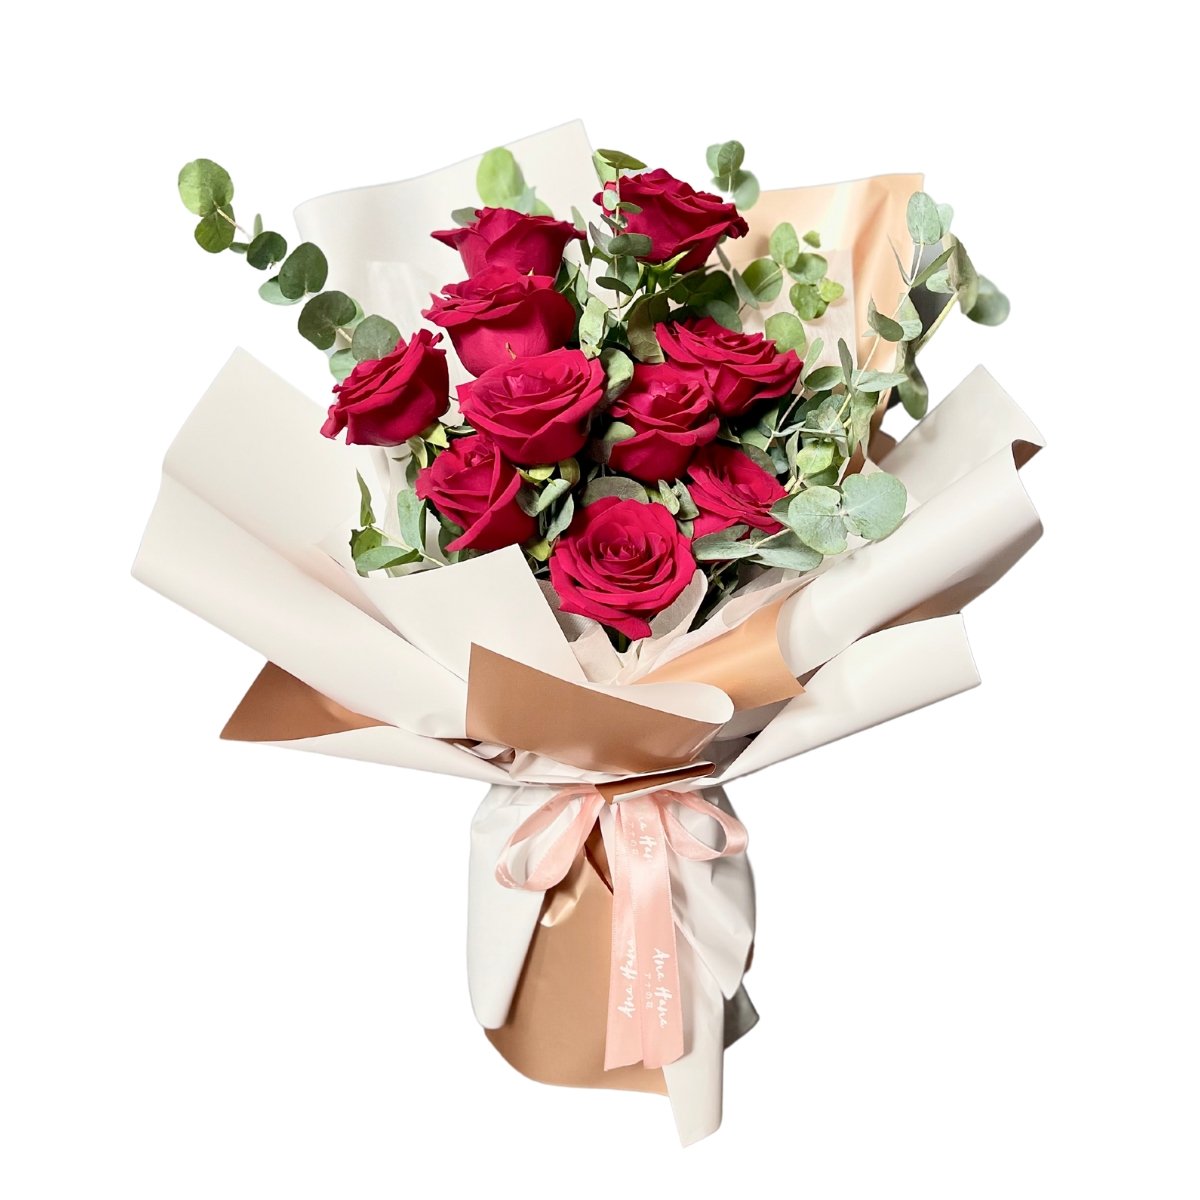 Budding Romance - Flower - Eucalyptus - Preserved Flowers & Fresh Flower Florist Gift Store